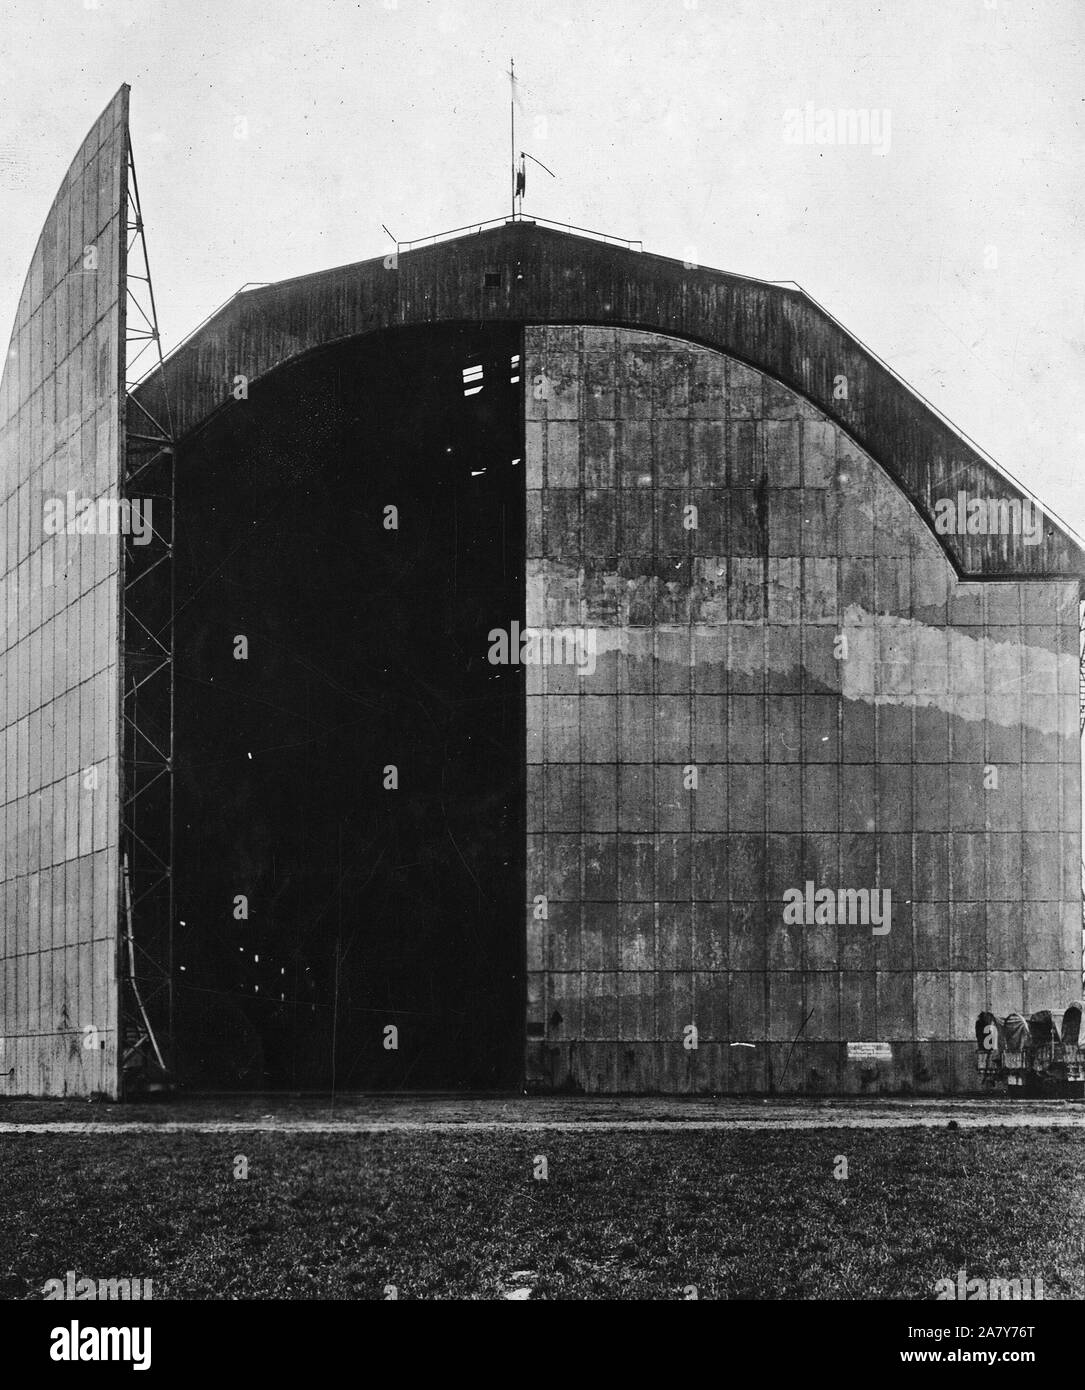 1919 - der Besatzungsarmee - Trier, Deutschland, dem Sitz der amerikanischen Besatzungstruppen. Eingang der Zeppelin Hangar. Es ist eine der größten der Welt. Beachten Sie enorme Größe der Stahltür Stockfoto